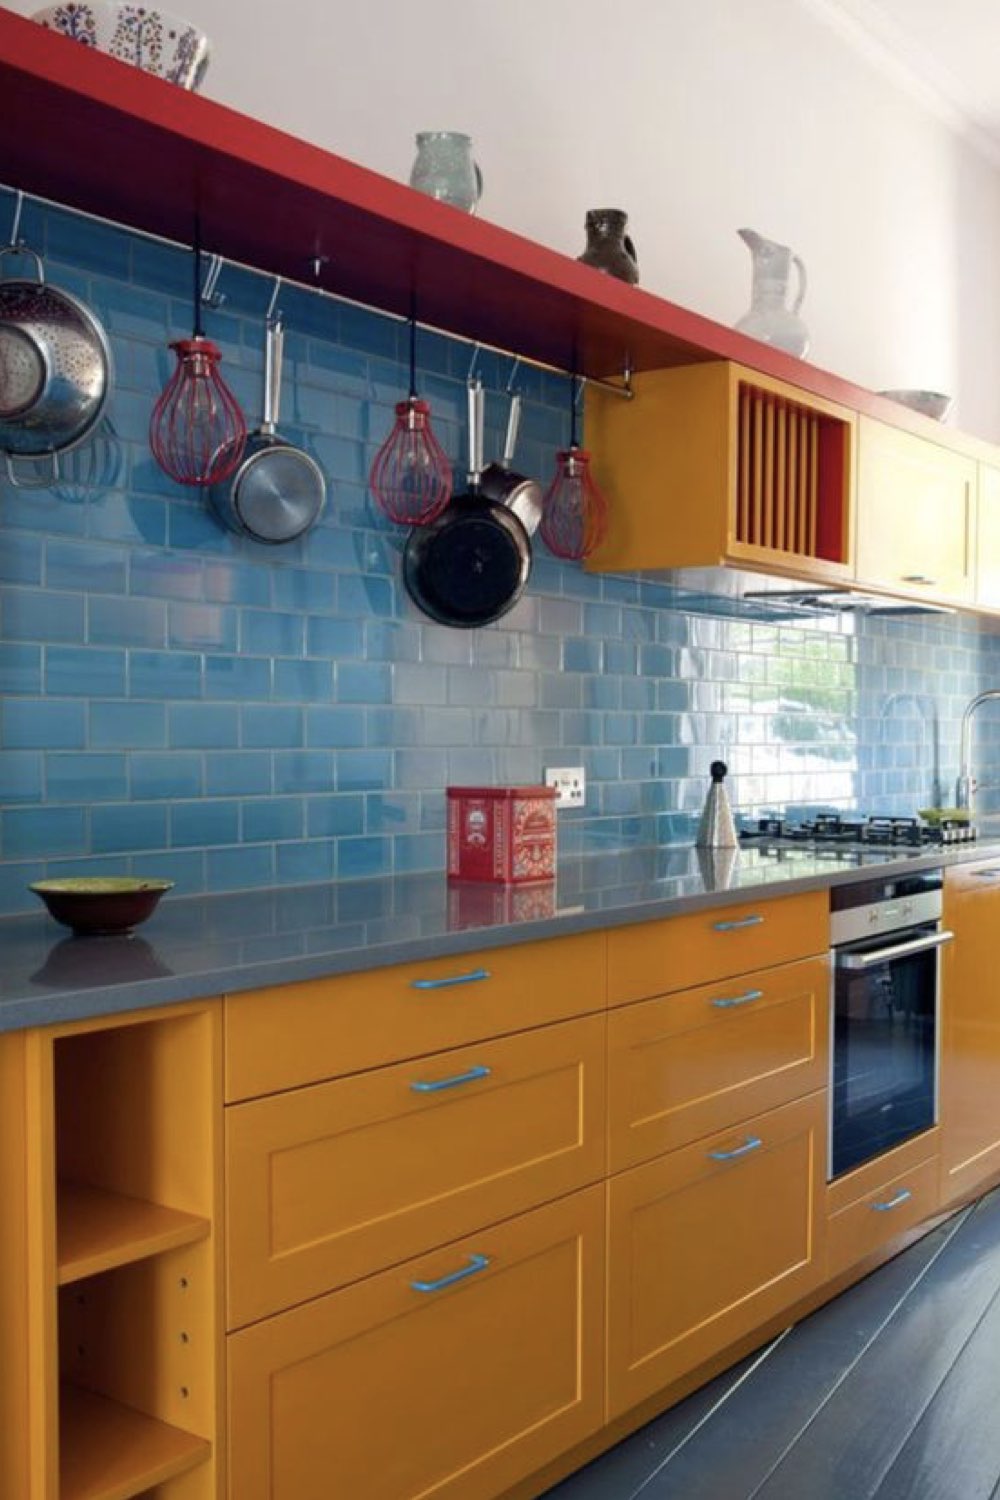 comment reussir decoration cuisine color block tendance jaune bleu rouge ludique bonne humeur